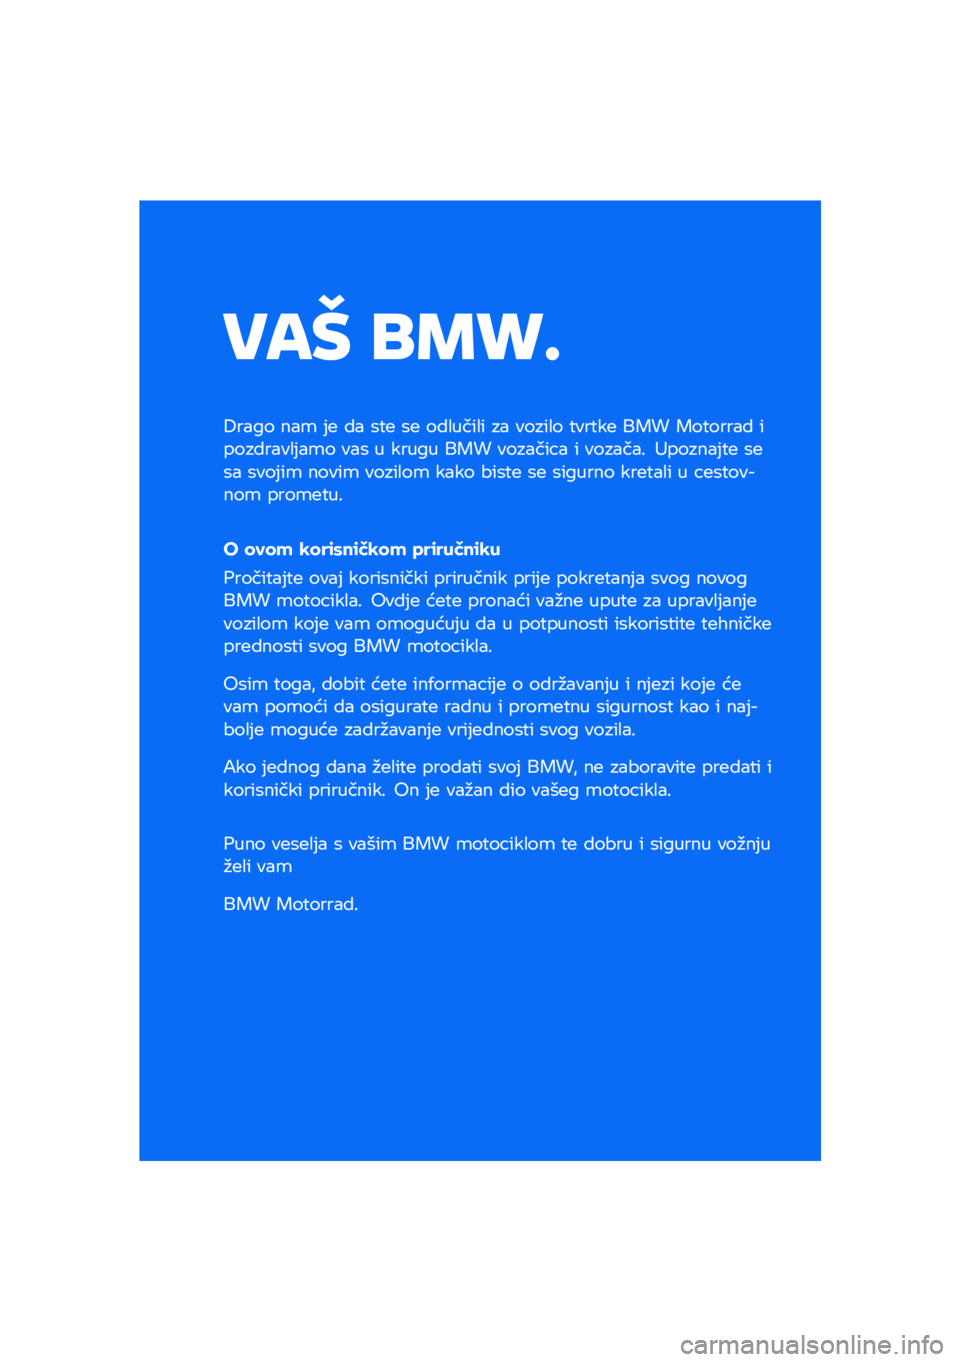 BMW MOTORRAD F 850 GS 2021  Kezelési útmutató (in Hungarian) ��� ��\b�	�

����� ���\b �	�
 �� �\f�
�
 �\f�
 �������� �� ������ �
���
��
 ��� ���
����� ����������	��\b� ���\f � ����� ��� ������